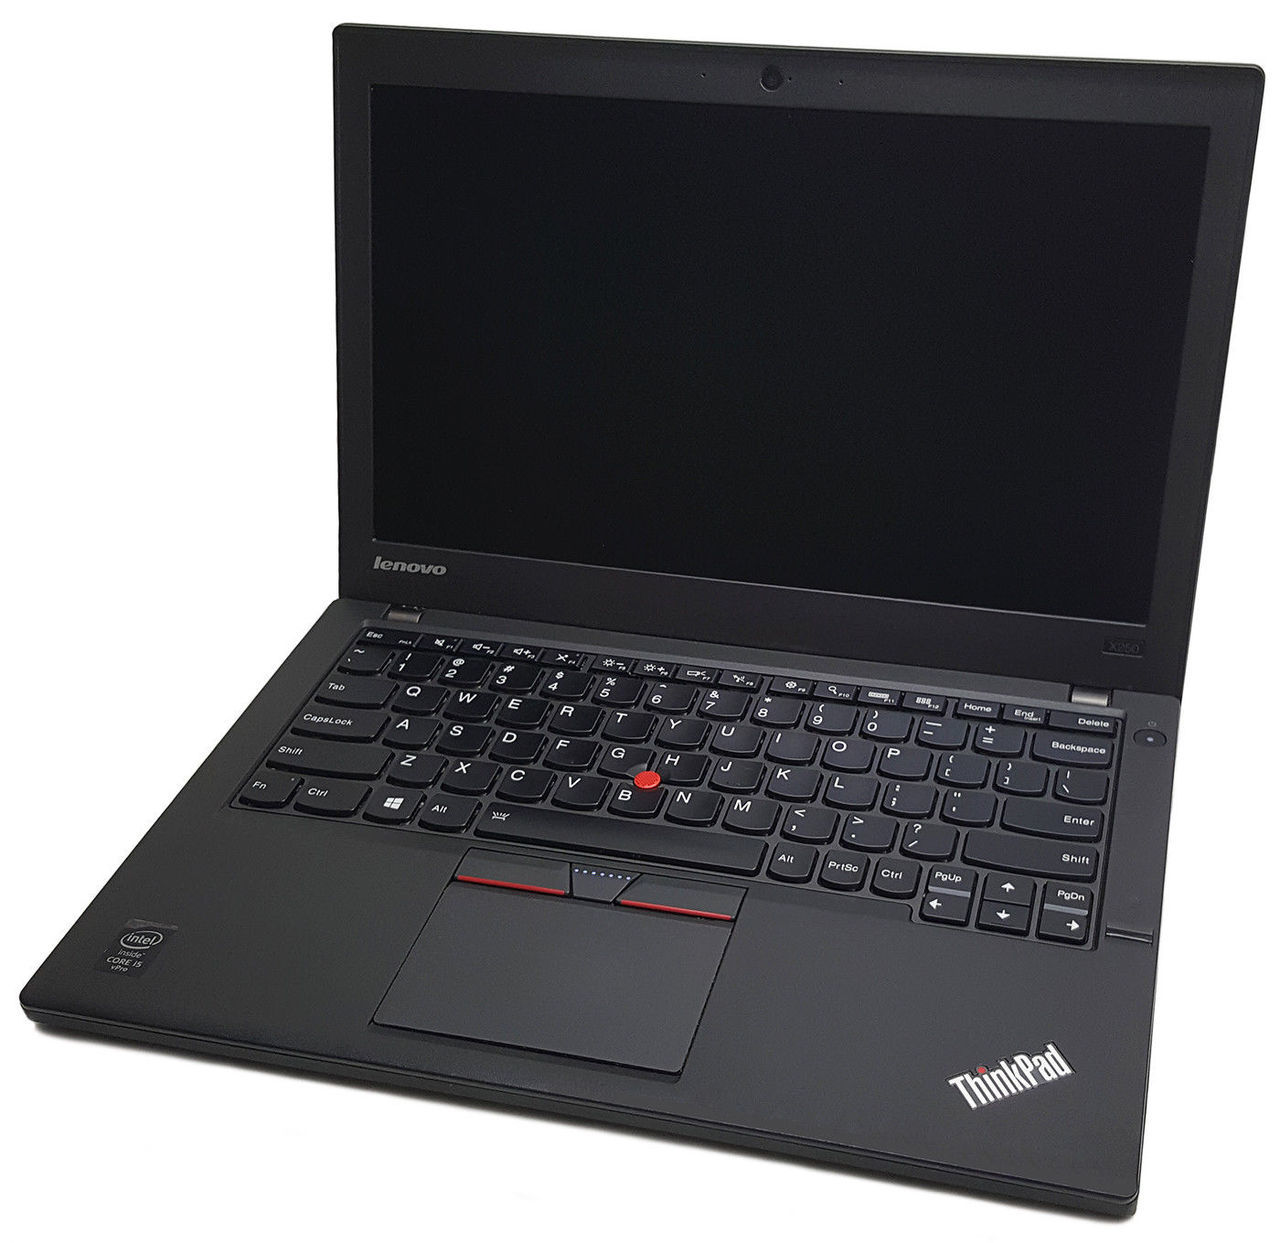 Lenovo Thinkpad X250 | Core i5 | Refurbished Laptop